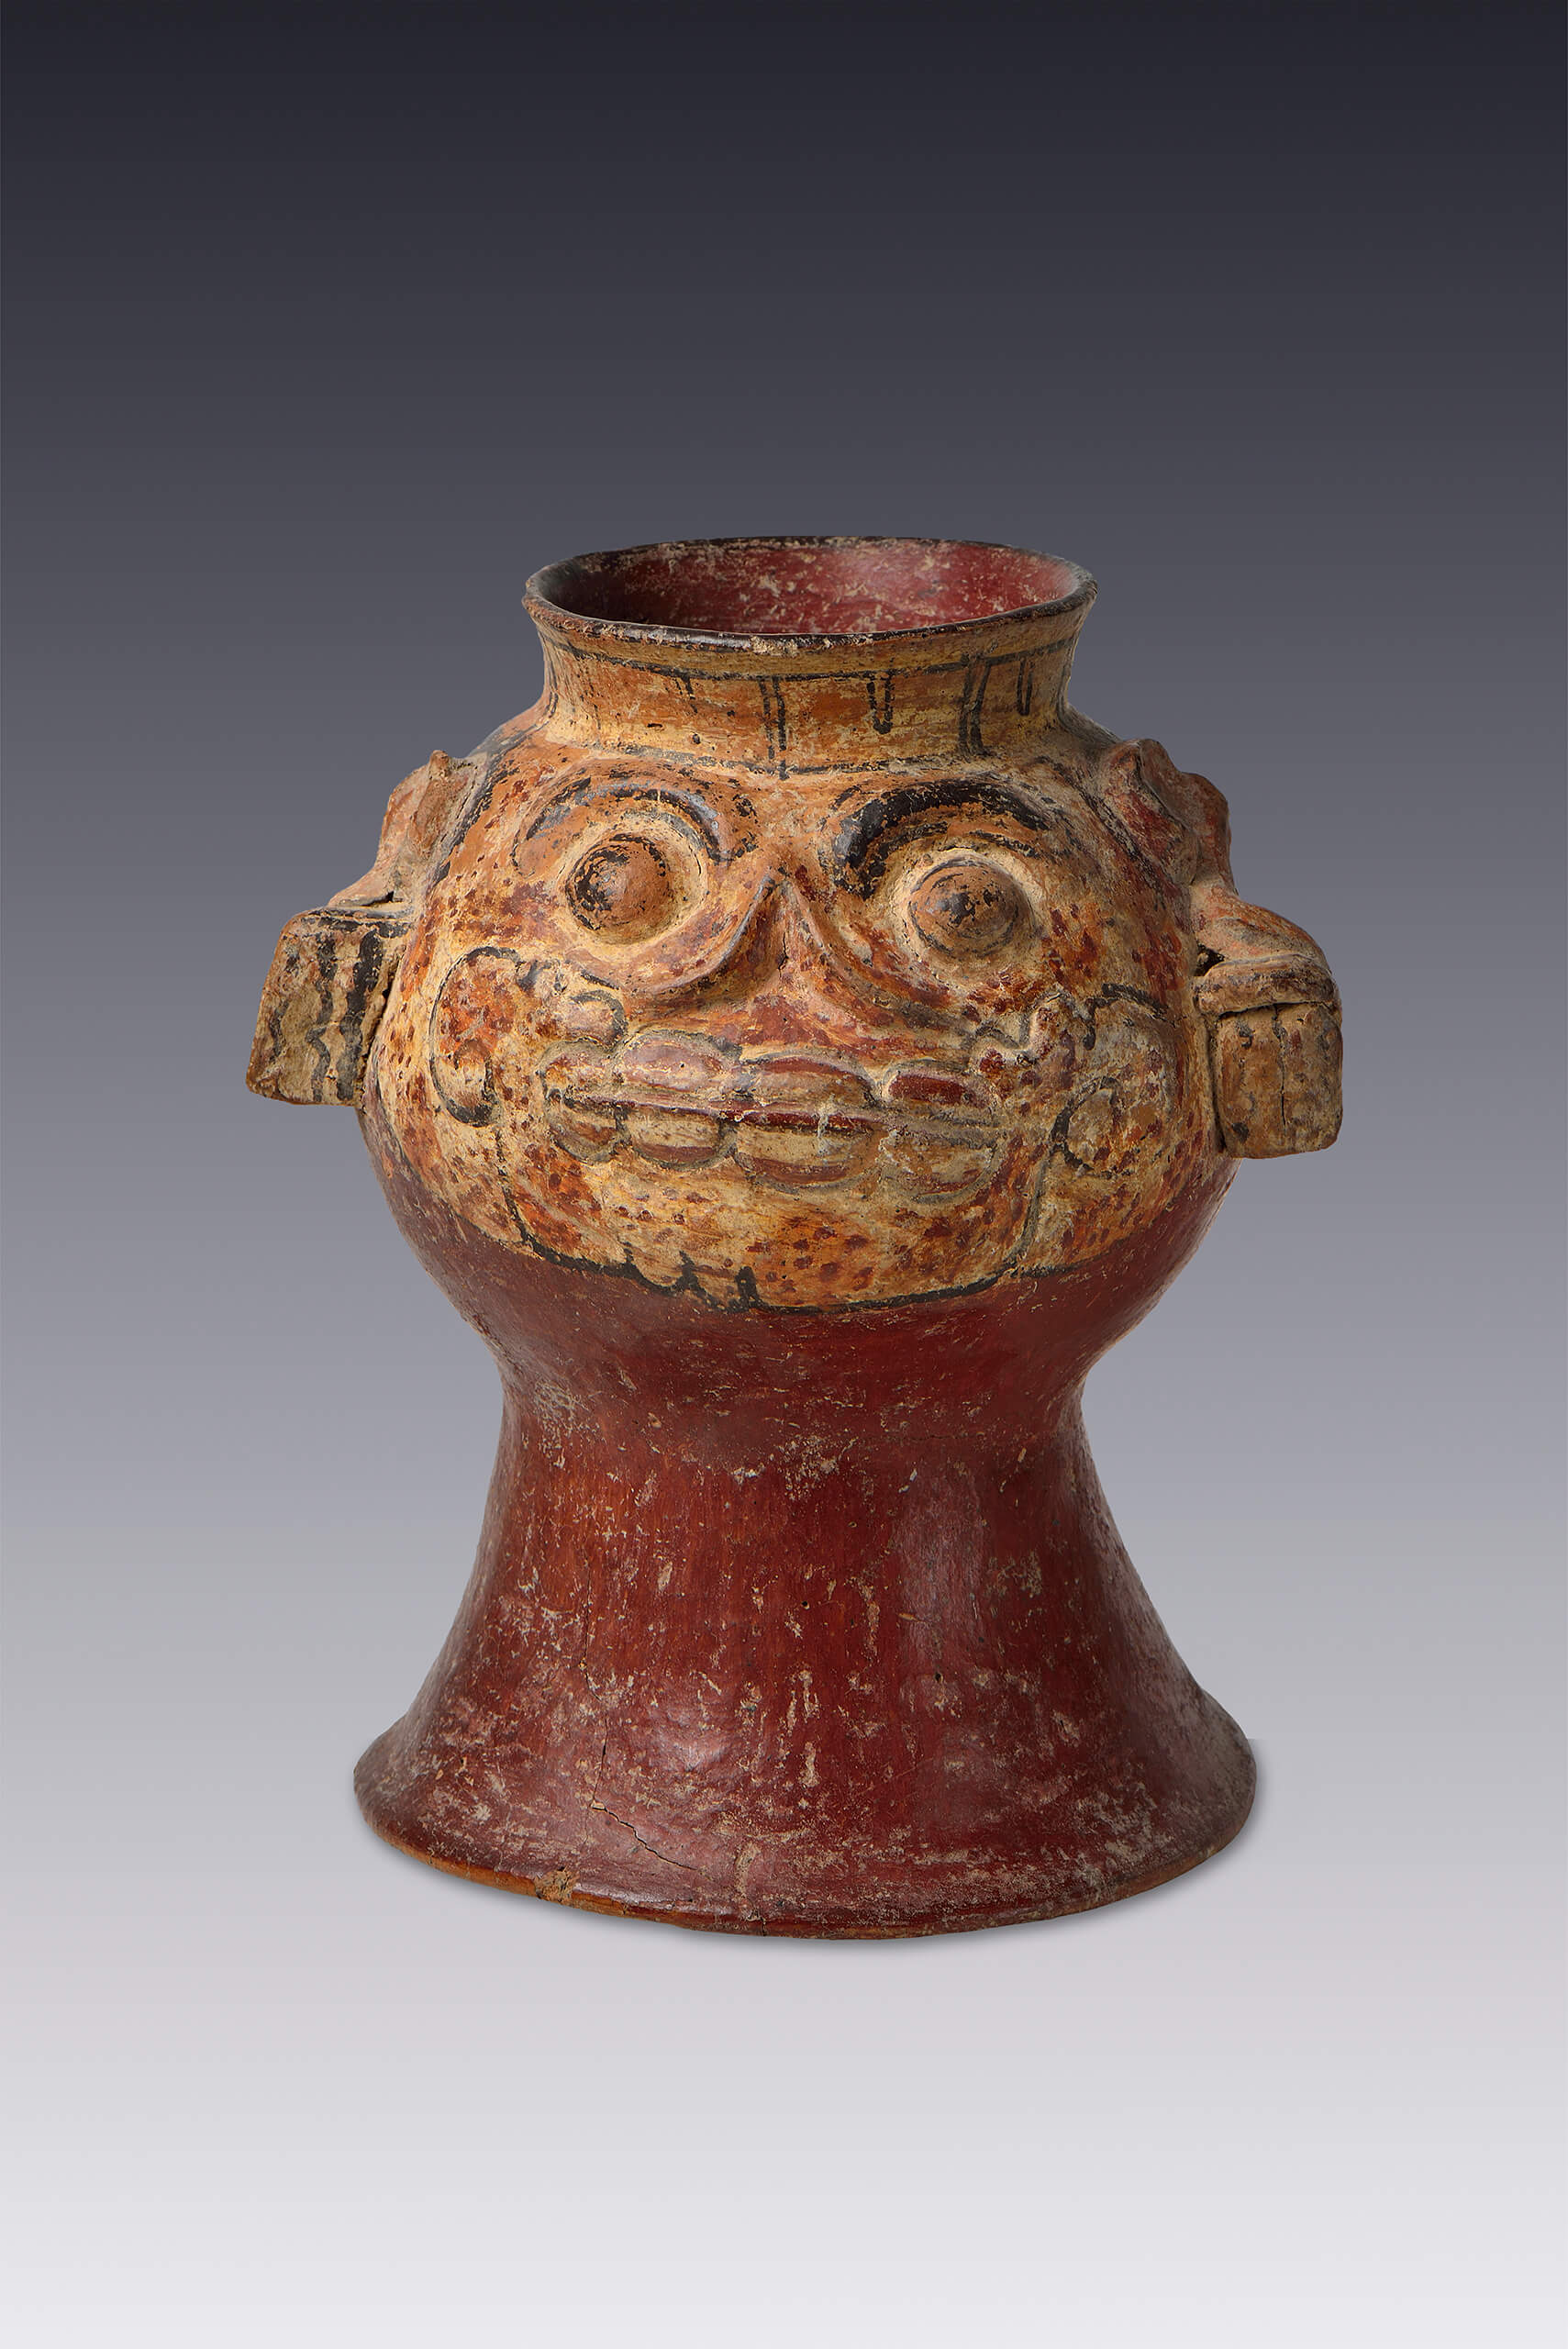 Vasija con forma de cráneo | El México antiguo. Salas de Arte Prehispánico | Museo Amparo, Puebla